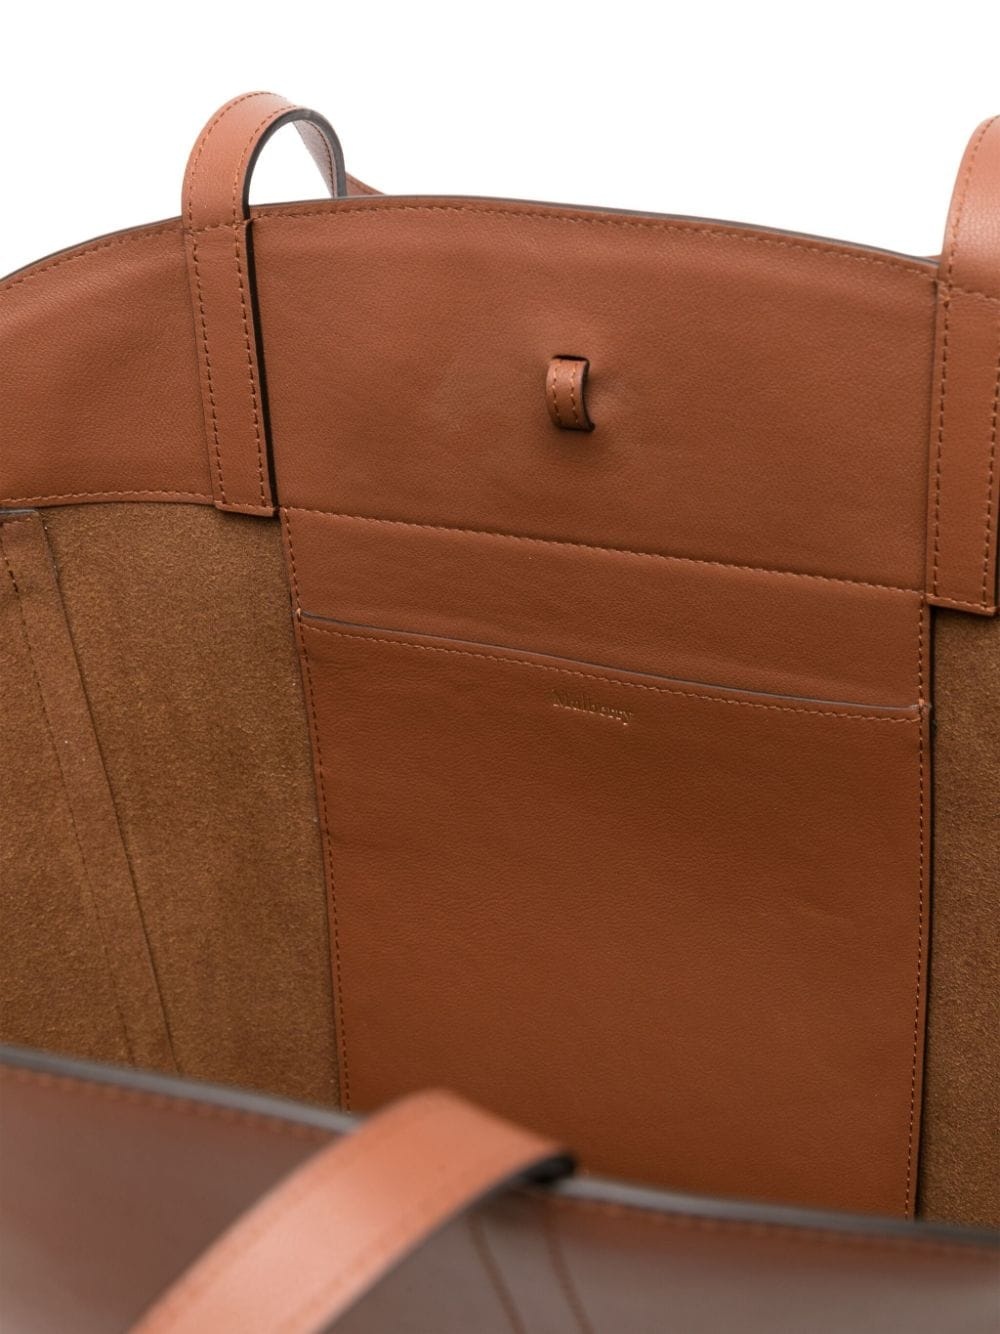 Clovelly leather shoulder bag - 5